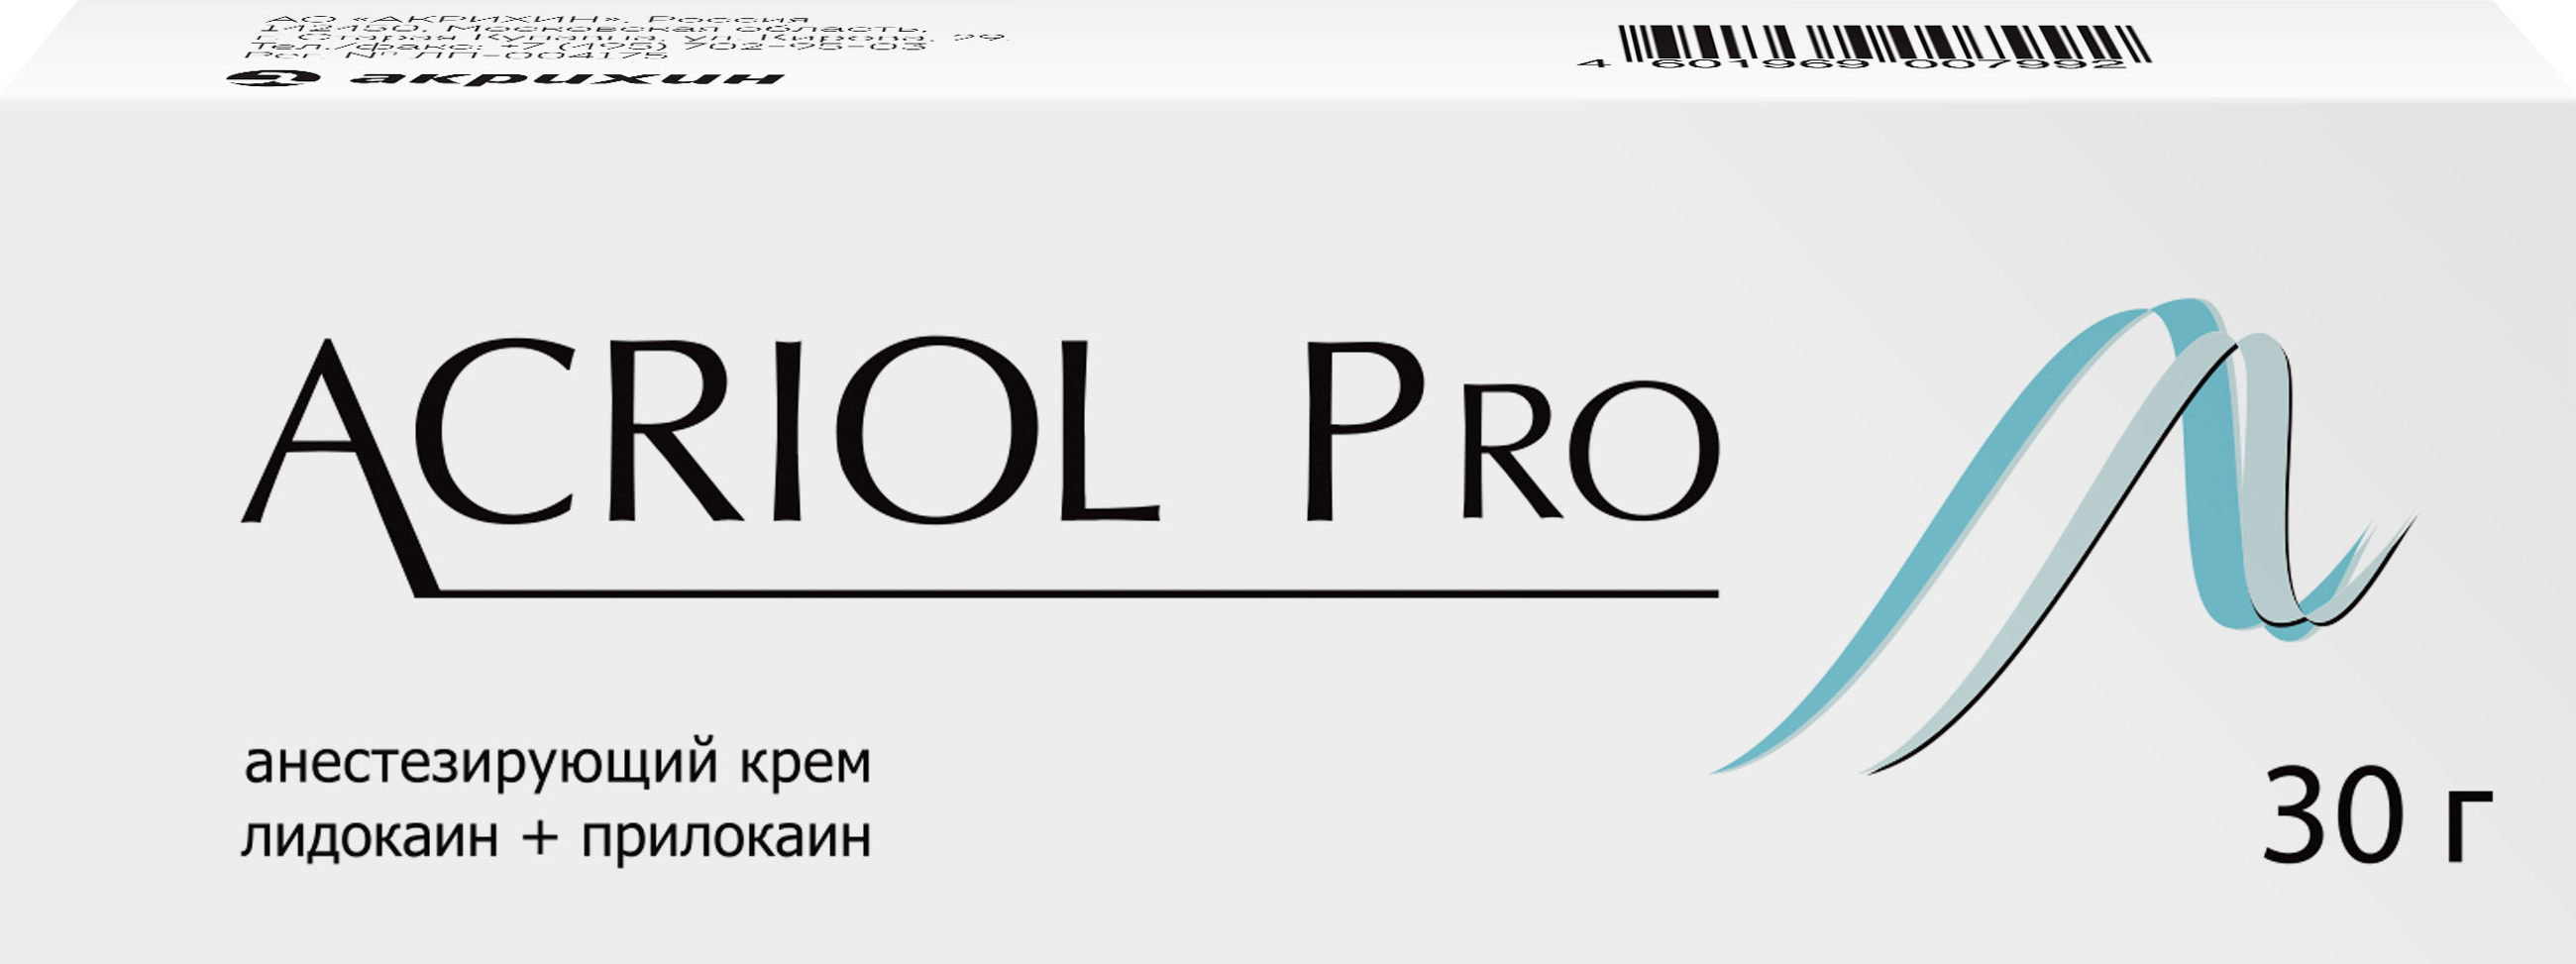 Акриол Про, крем 2,5%+2,5%, 30 г.